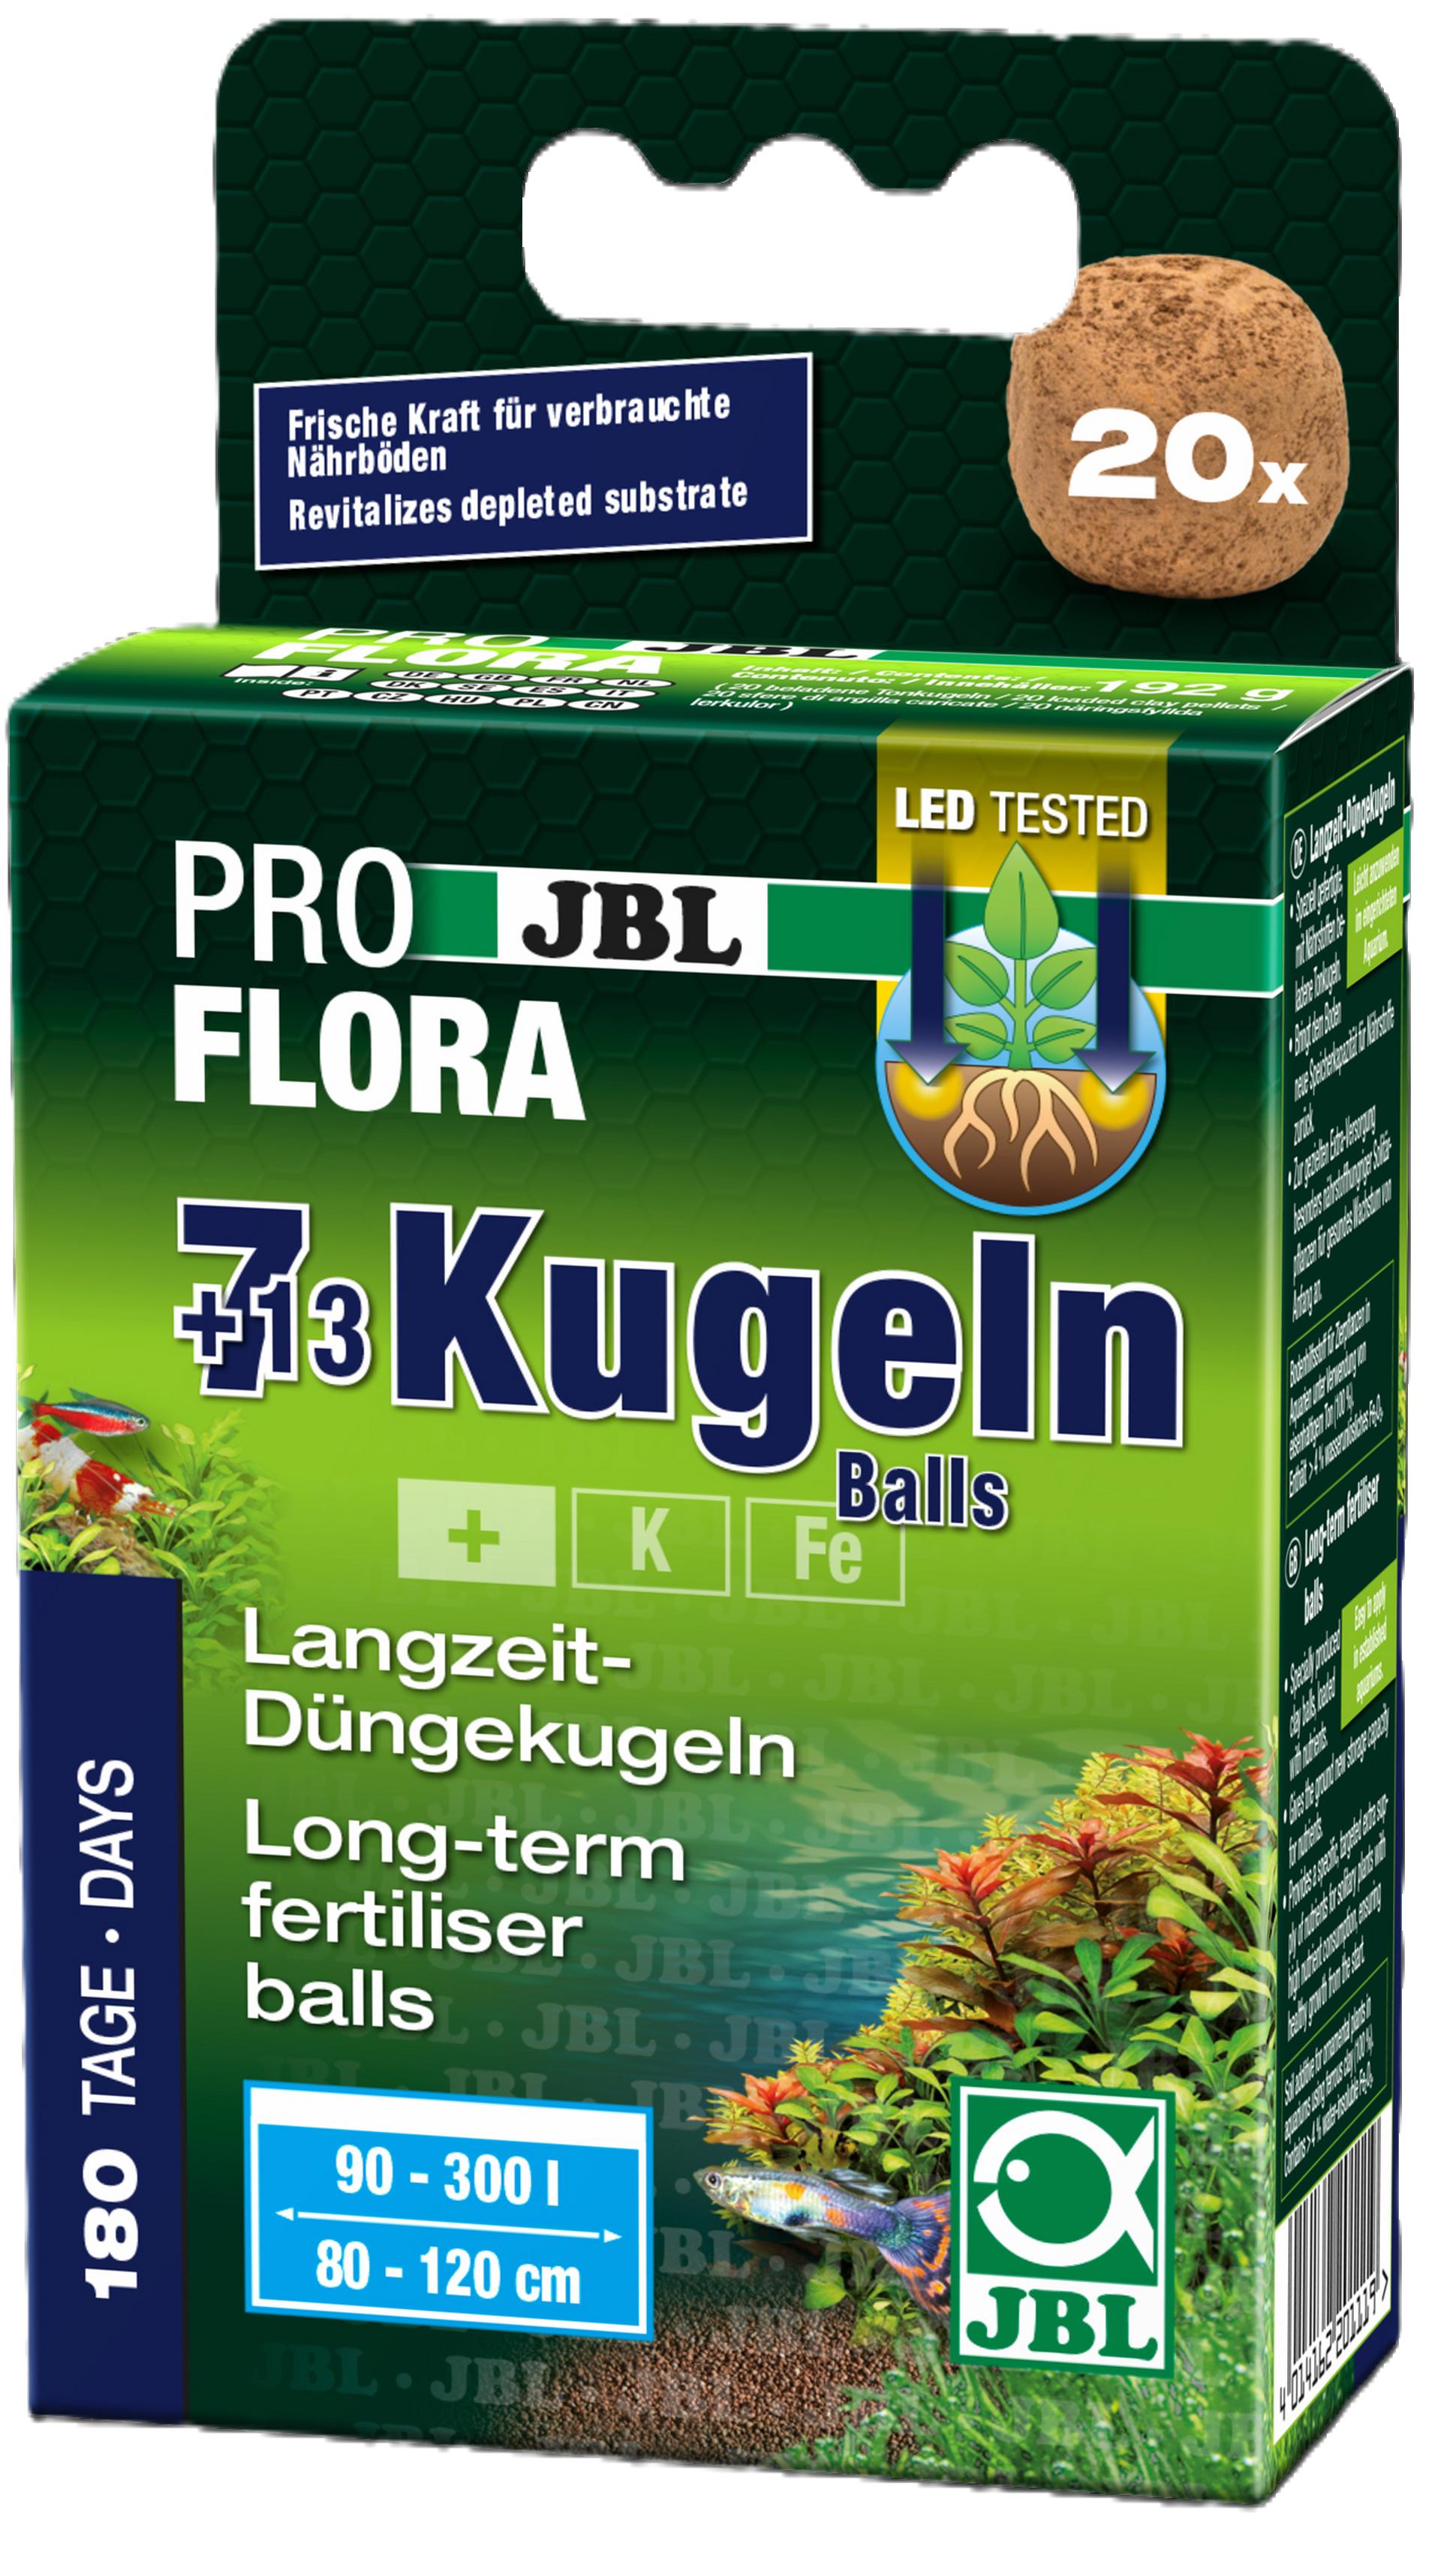 JBL Kugeln Balls 7+13